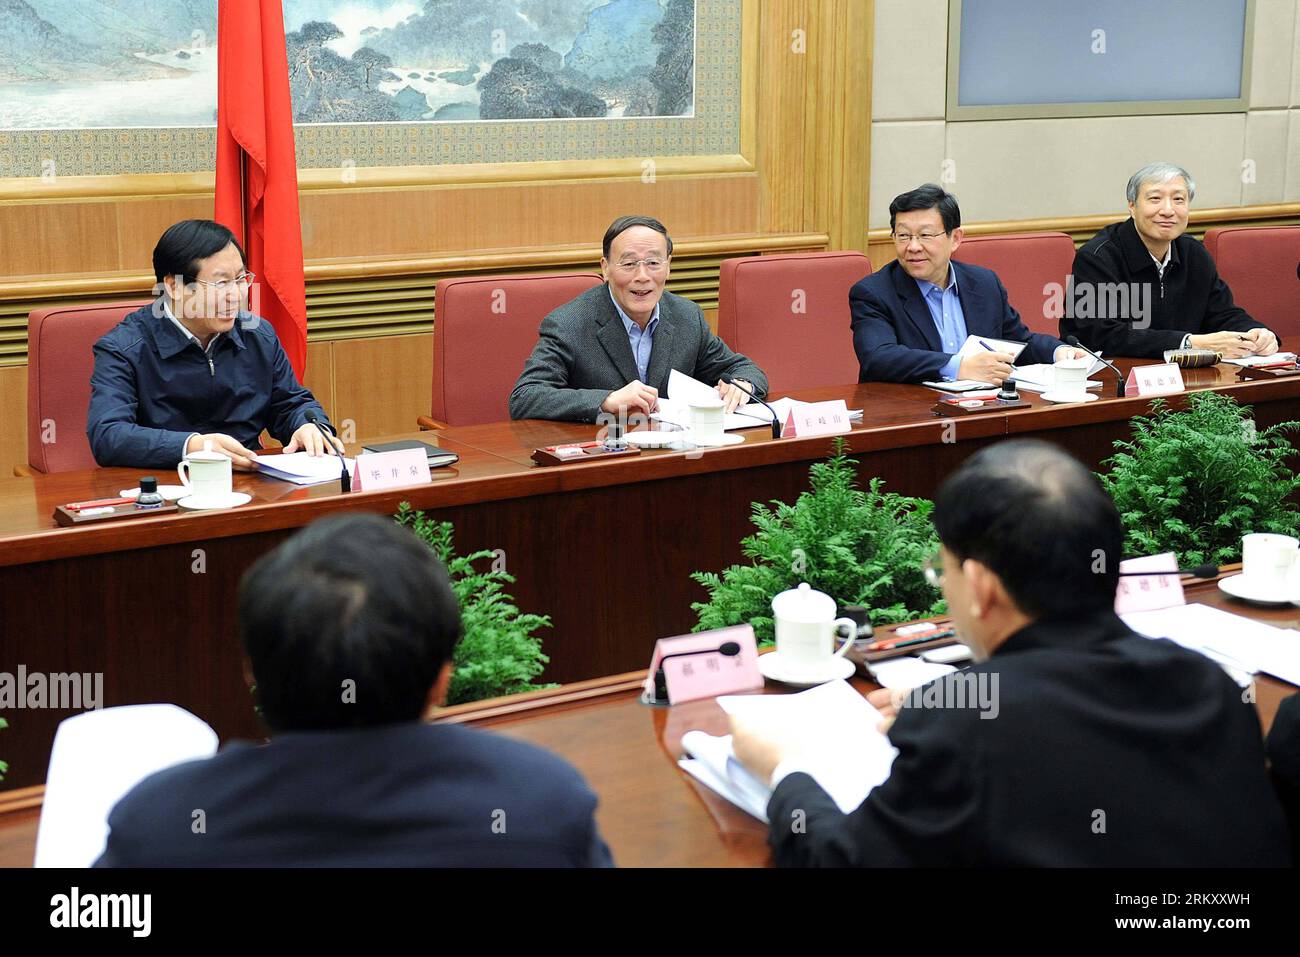 Bildnummer: 59104232 Datum: 18.01.2013 Copyright: imago/Xinhua (130118) -- PEKING, 18. Januar 2013 (Xinhua) -- chinesischer Vize-Premier Wang Qishan (2. L), die WHO ist auch Mitglied des Ständigen Ausschusses des Politischen Büros des Zentralkomitees der Kommunistischen Partei Chinas (KPCh) und leitet am 18. Januar 2013 in Peking, der Hauptstadt Chinas, eine Sitzung über das Vorgehen gegen Verletzungen geistigen Eigentums und gefälschte Produkte. (Xinhua/Li Tao) (zkr) CHINA-PEKING-WANG QISHAN-ANTI-PIRATERIE-TREFFEN (CN) PUBLICATIONxNOTxINxCHN Politik People xas x0x 2013 quer 59104232 Datum 18 01 2013 Copyright Stockfoto